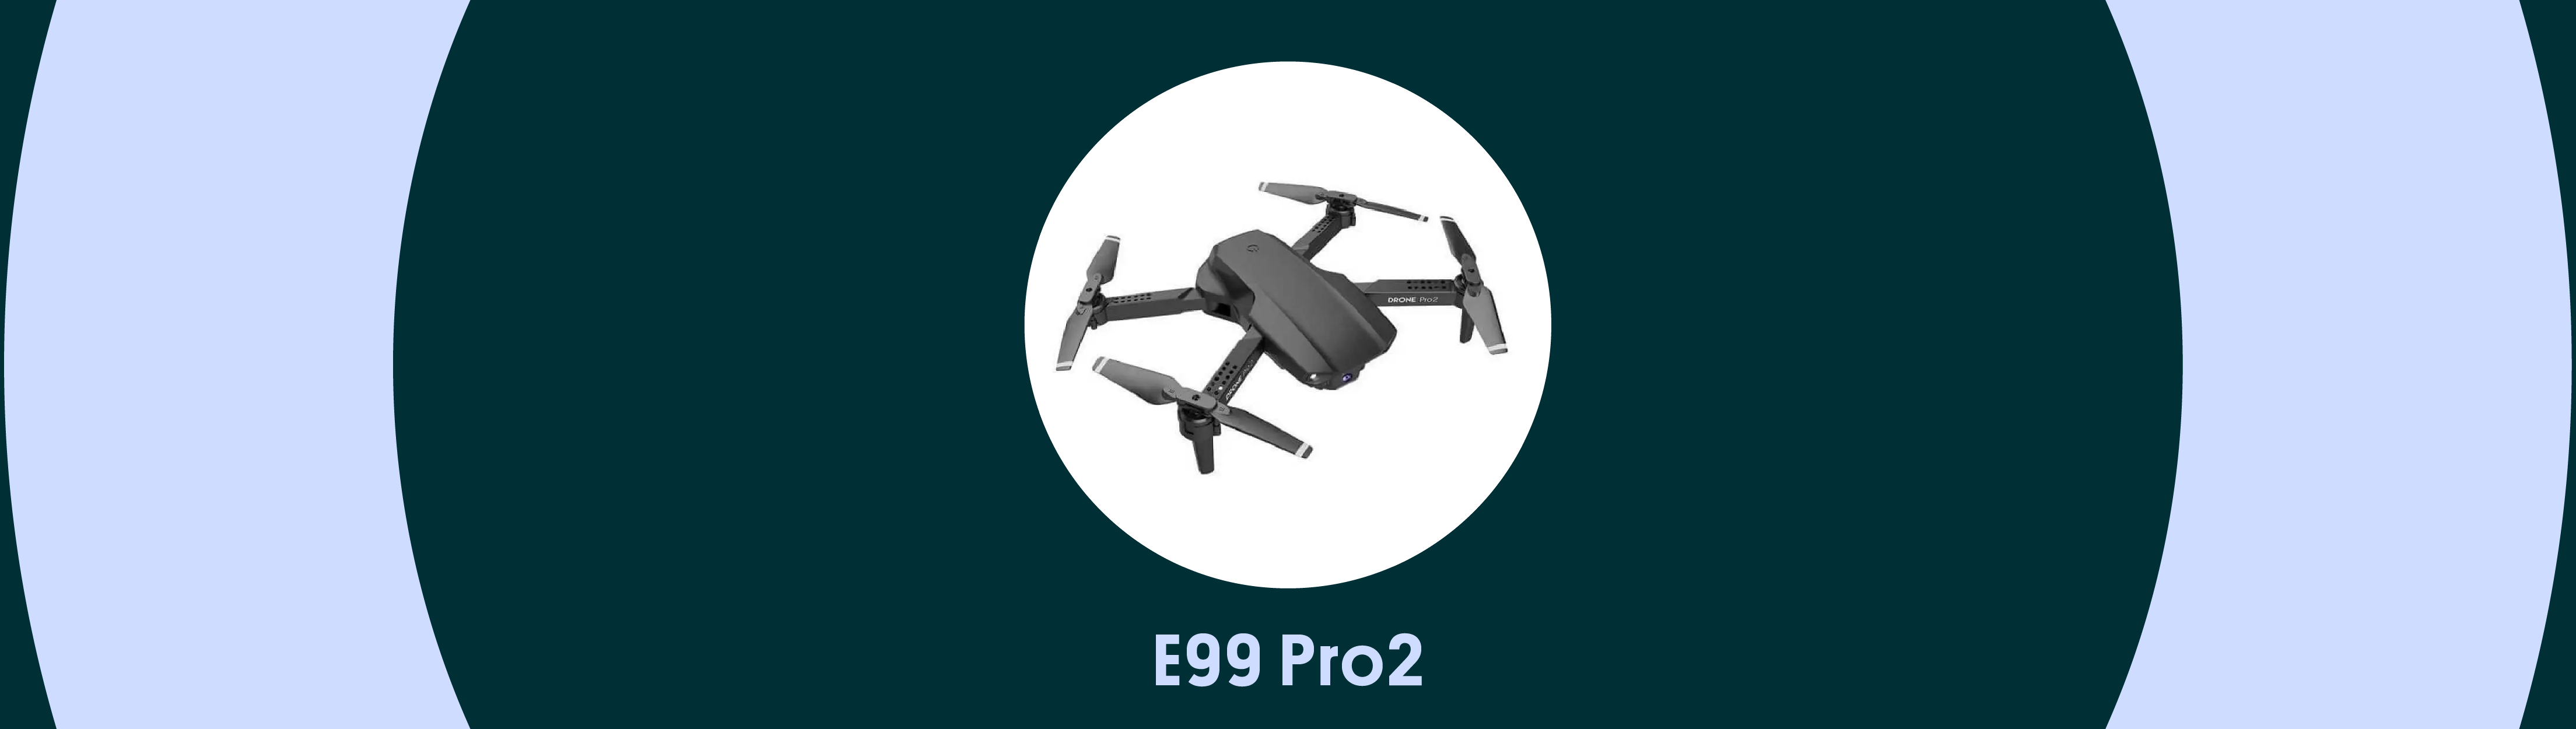 Квадрокоптер E99 Pro2